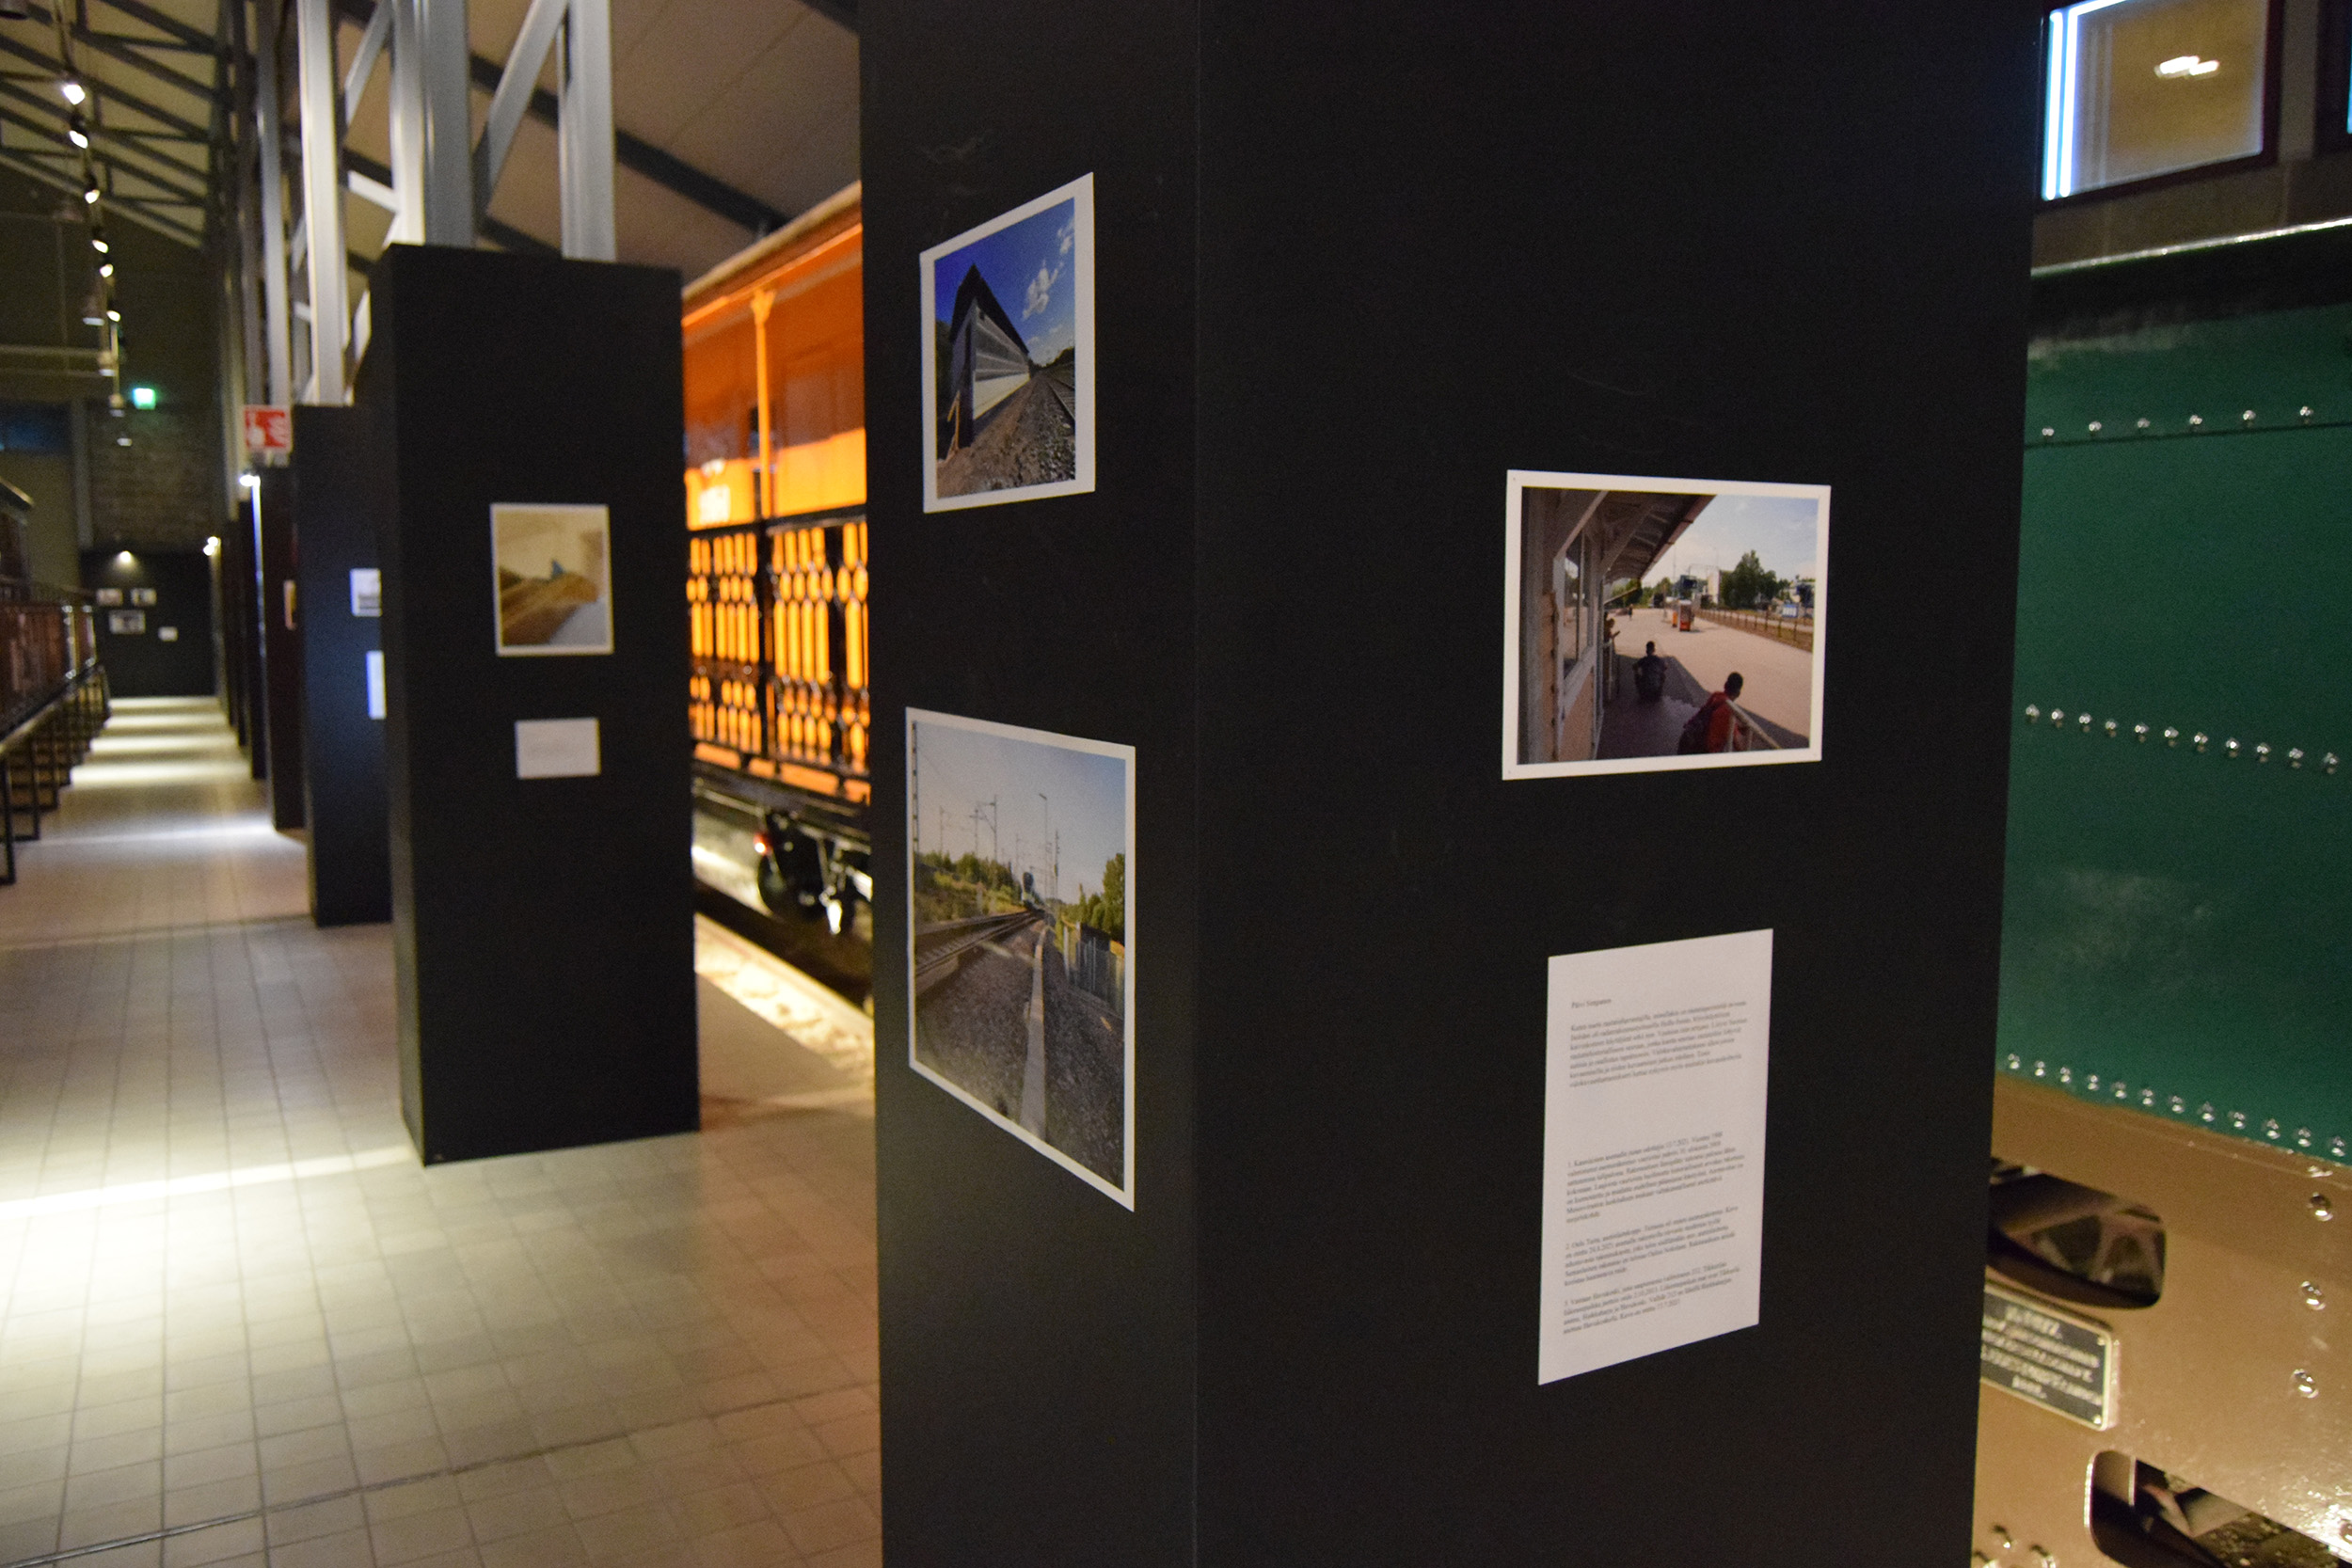 Vapaaehtoisten kuvaajien rautatieaiheinen valokuvanäyttely Suomen Rautatiemuseon näyttelyhallissa.